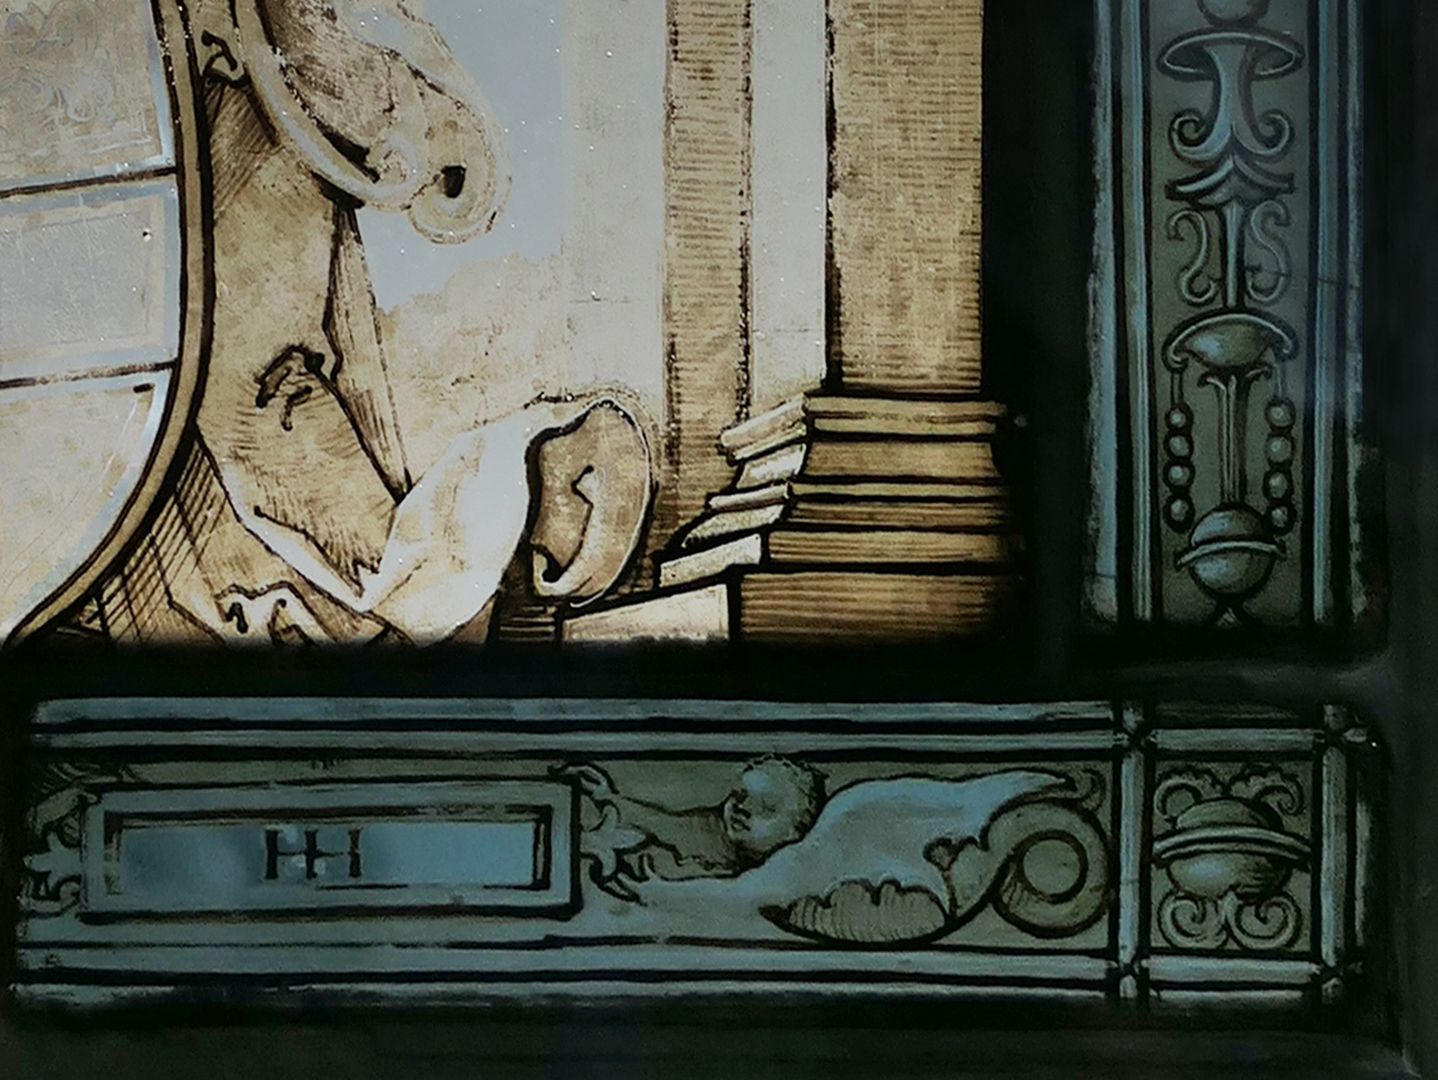 Fenster nIII 1 und sIII 1 des Sebalder Chörleins Zweites Fenster der Reihe, Engel mit österreichischem Bindenschild, Detailansicht mit Künstlersignatur HH